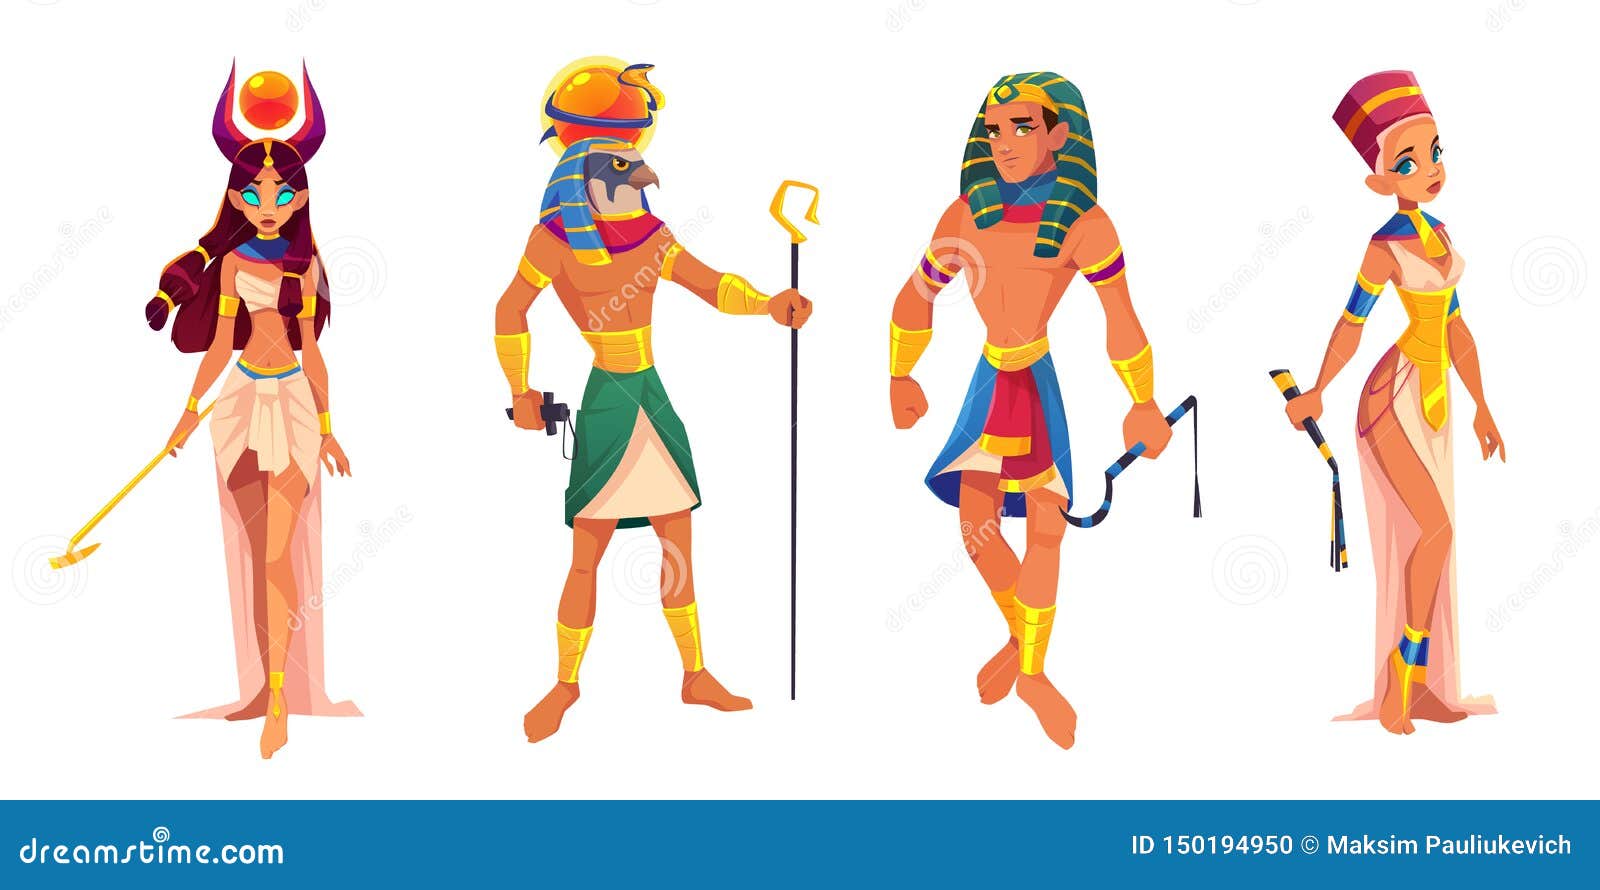 Les dieux d egypte